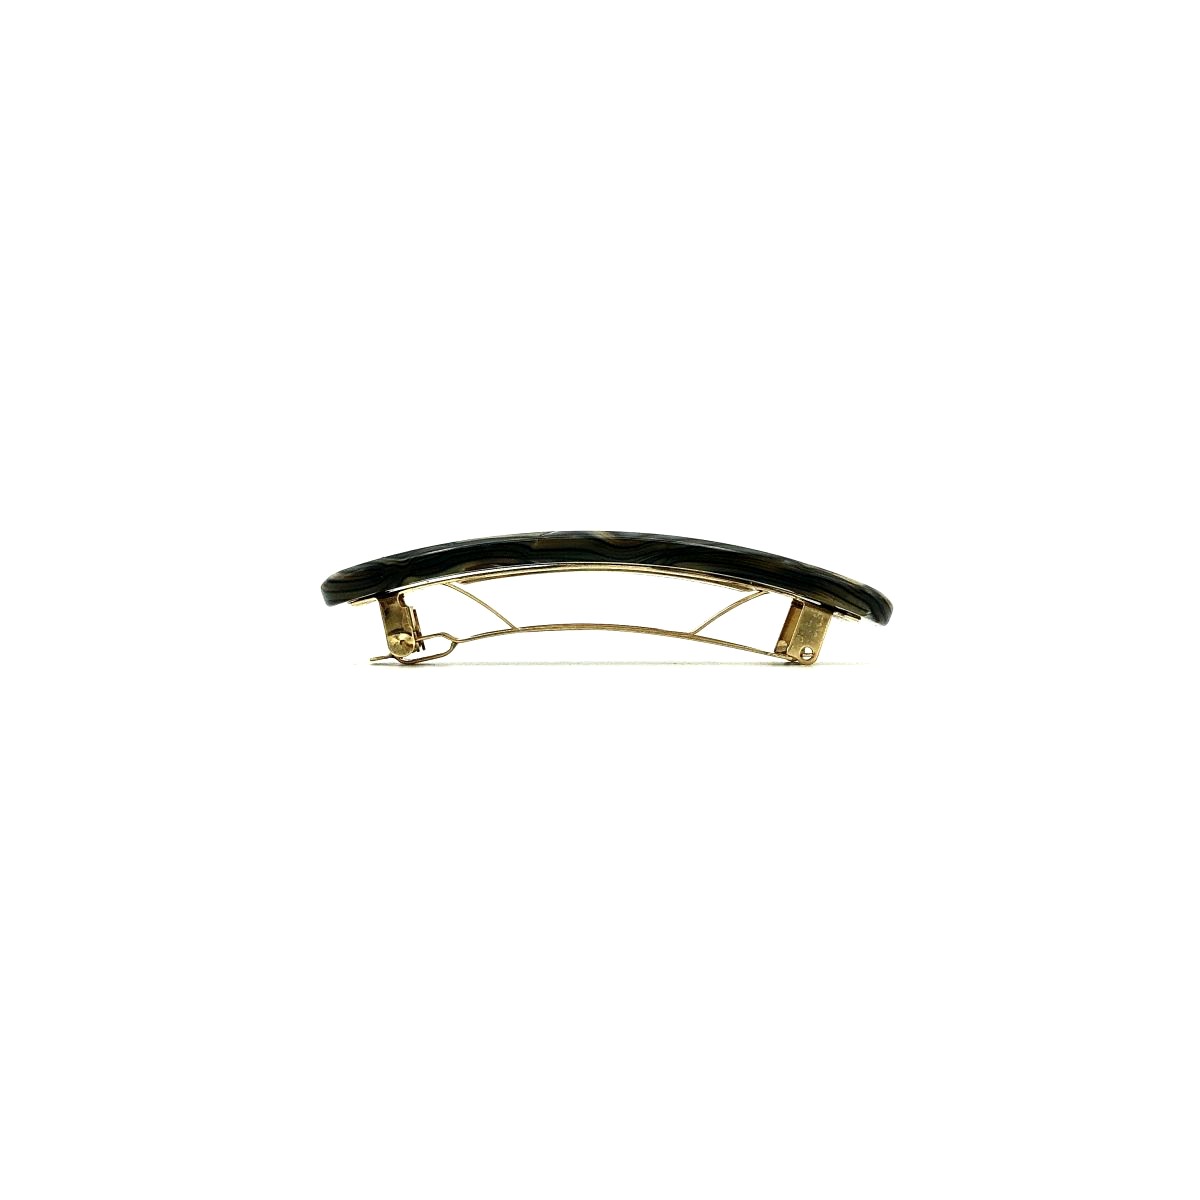 Haarspange perlmutt/braun - klein, paralleloval - 7,7 cm